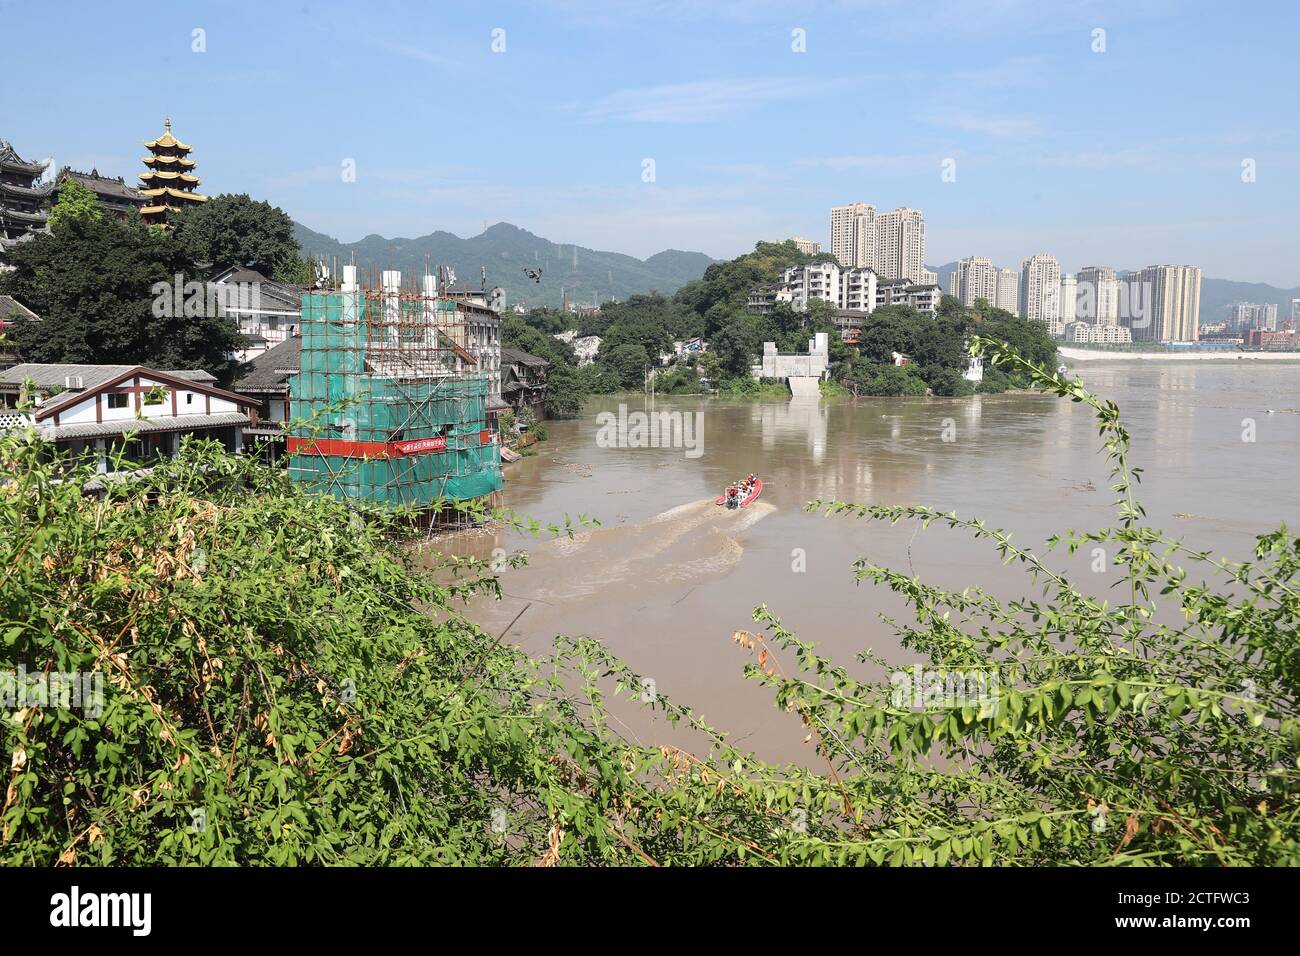 Blick auf Ciqikou alte Stadt überflutet durch Regensturm in Chongqing, China, 14. August 2020. Stockfoto